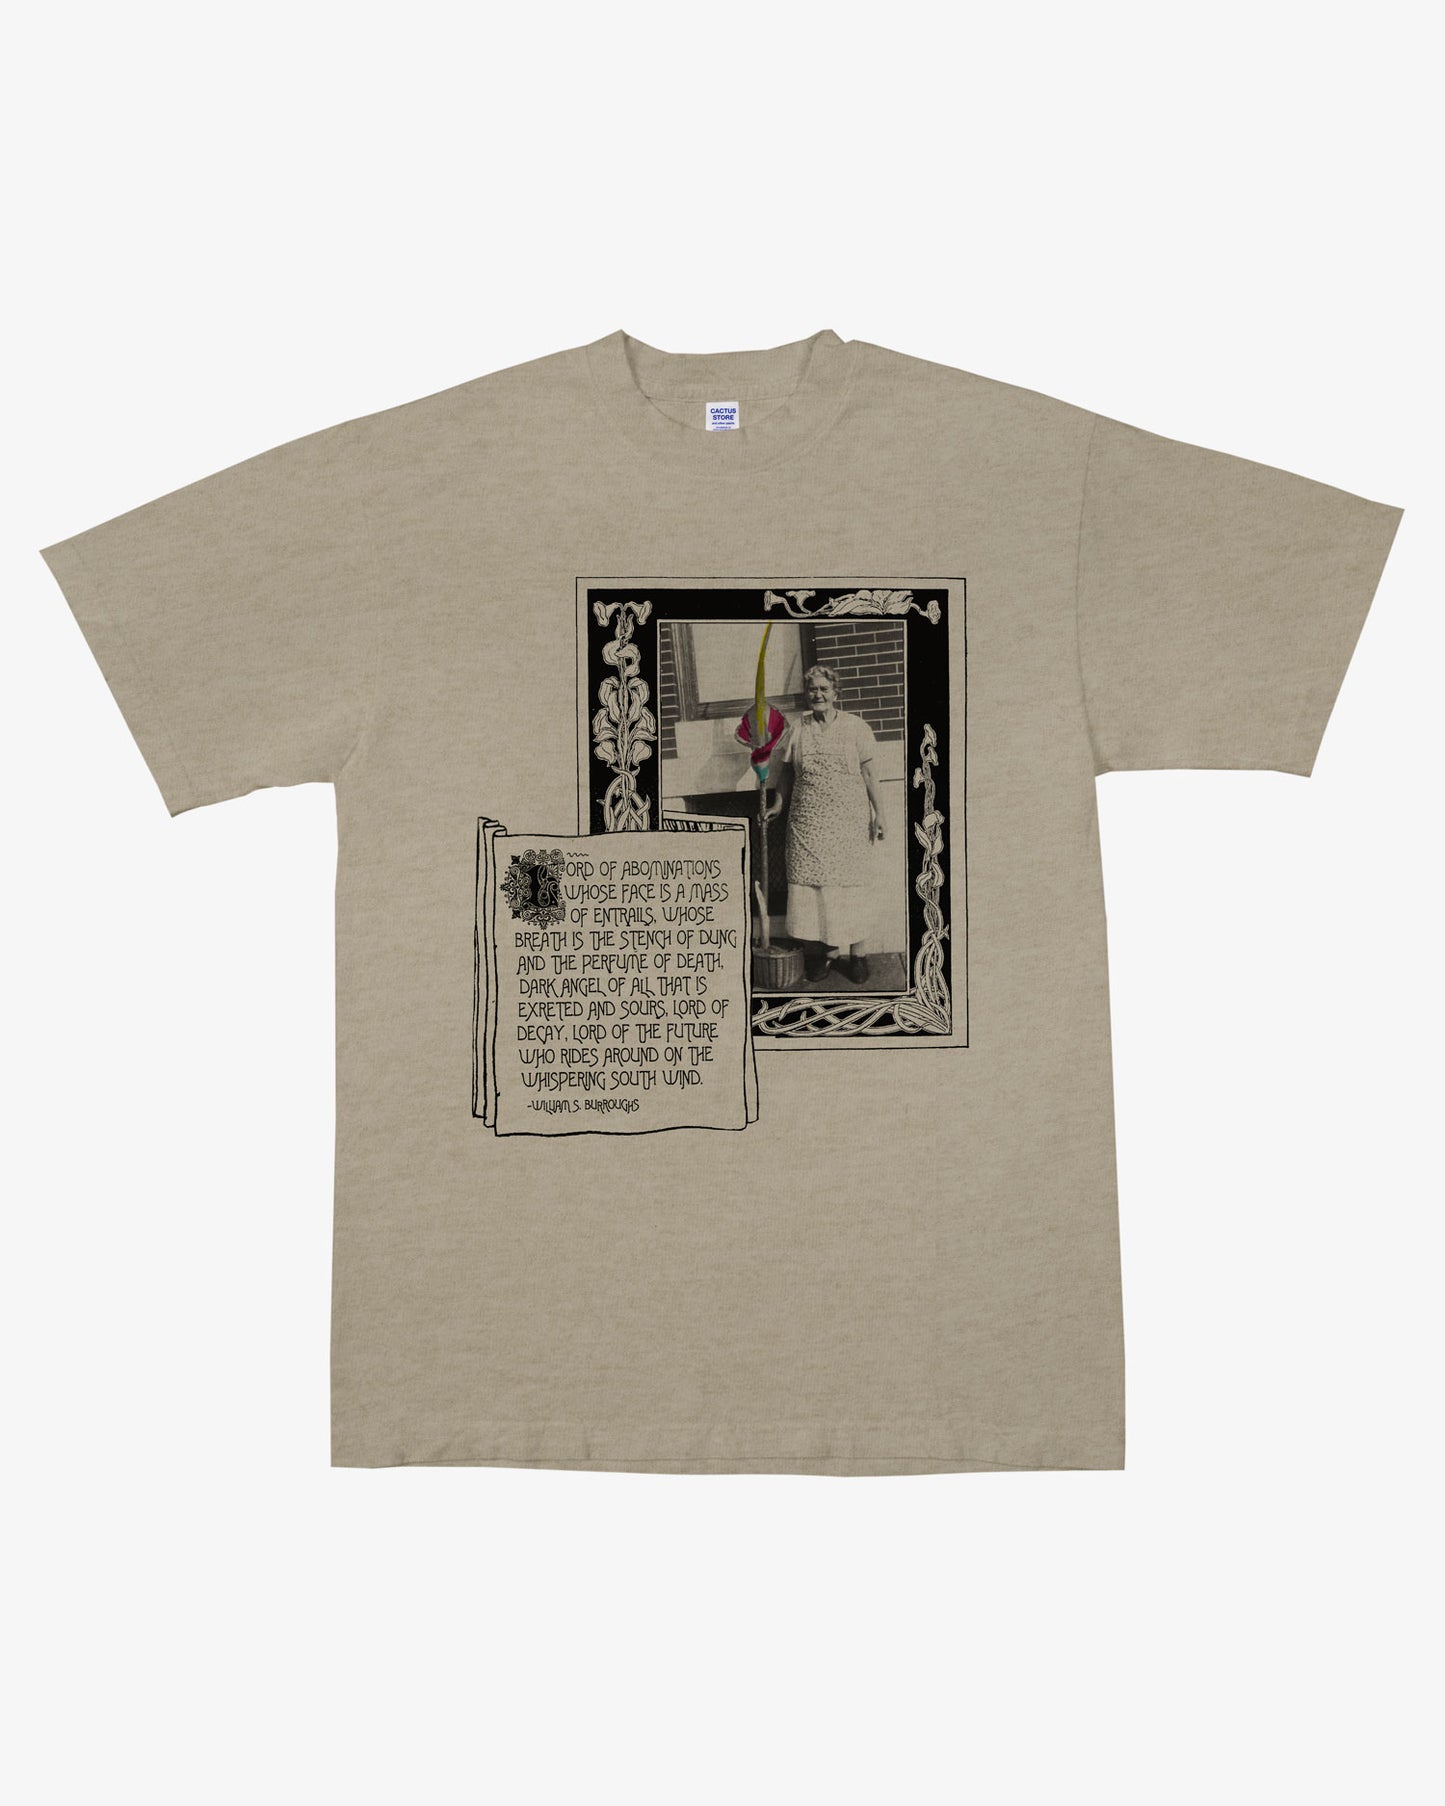 Corpse Flower Shirt 3: The Mop